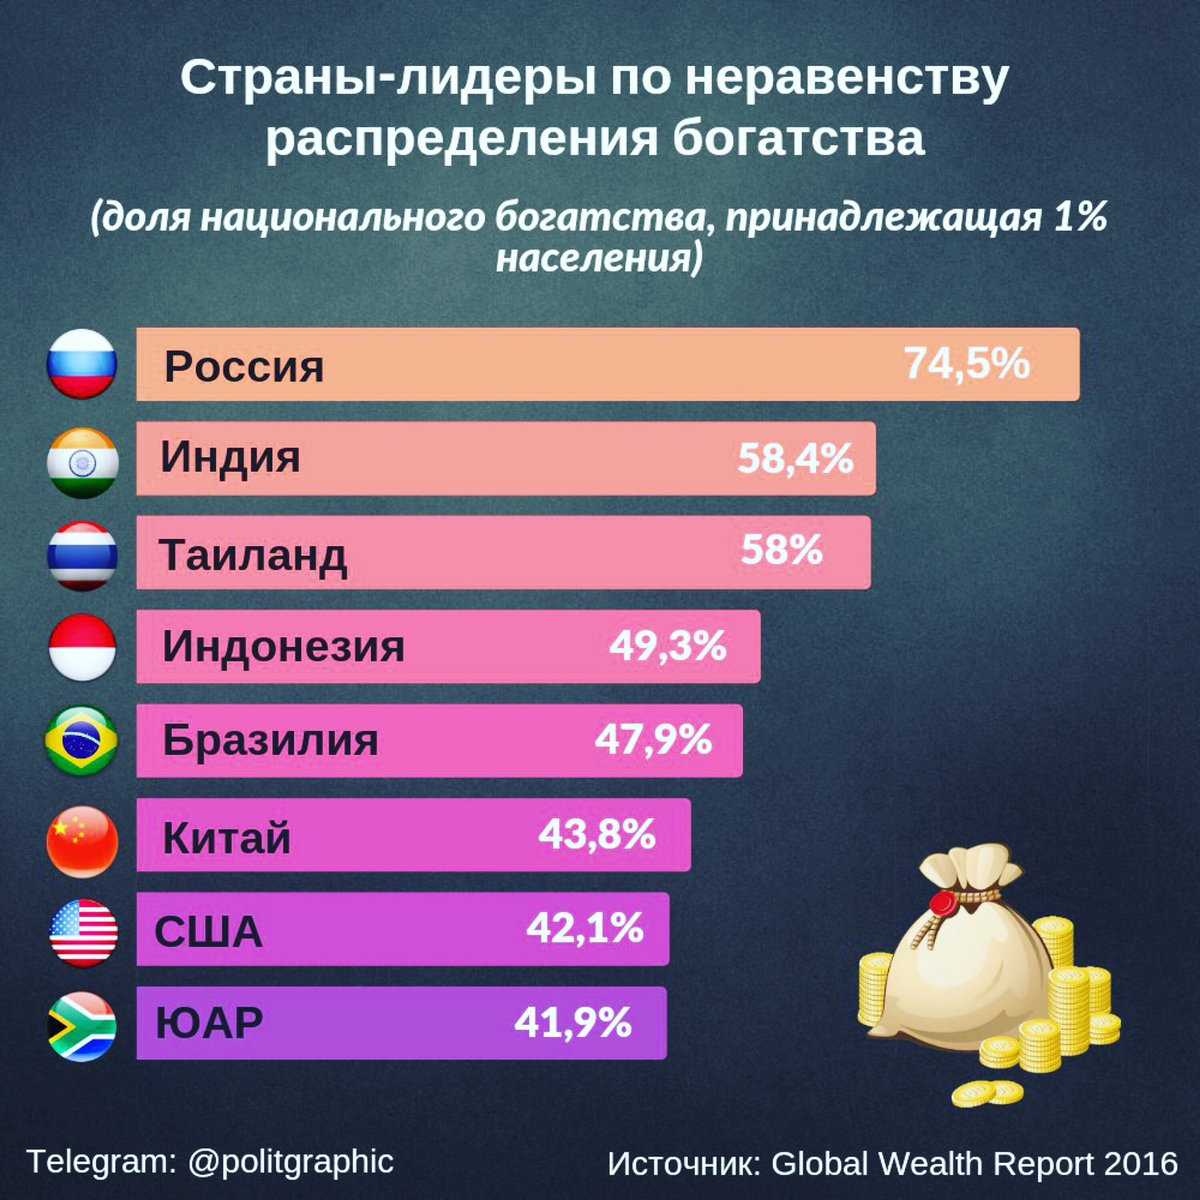 Где россия лидер. Страны Лидеры по неравенству. Страны Лидеры по неравенству распределения богатства. Социальное неравенство по странам. Распределение богатых по странам.